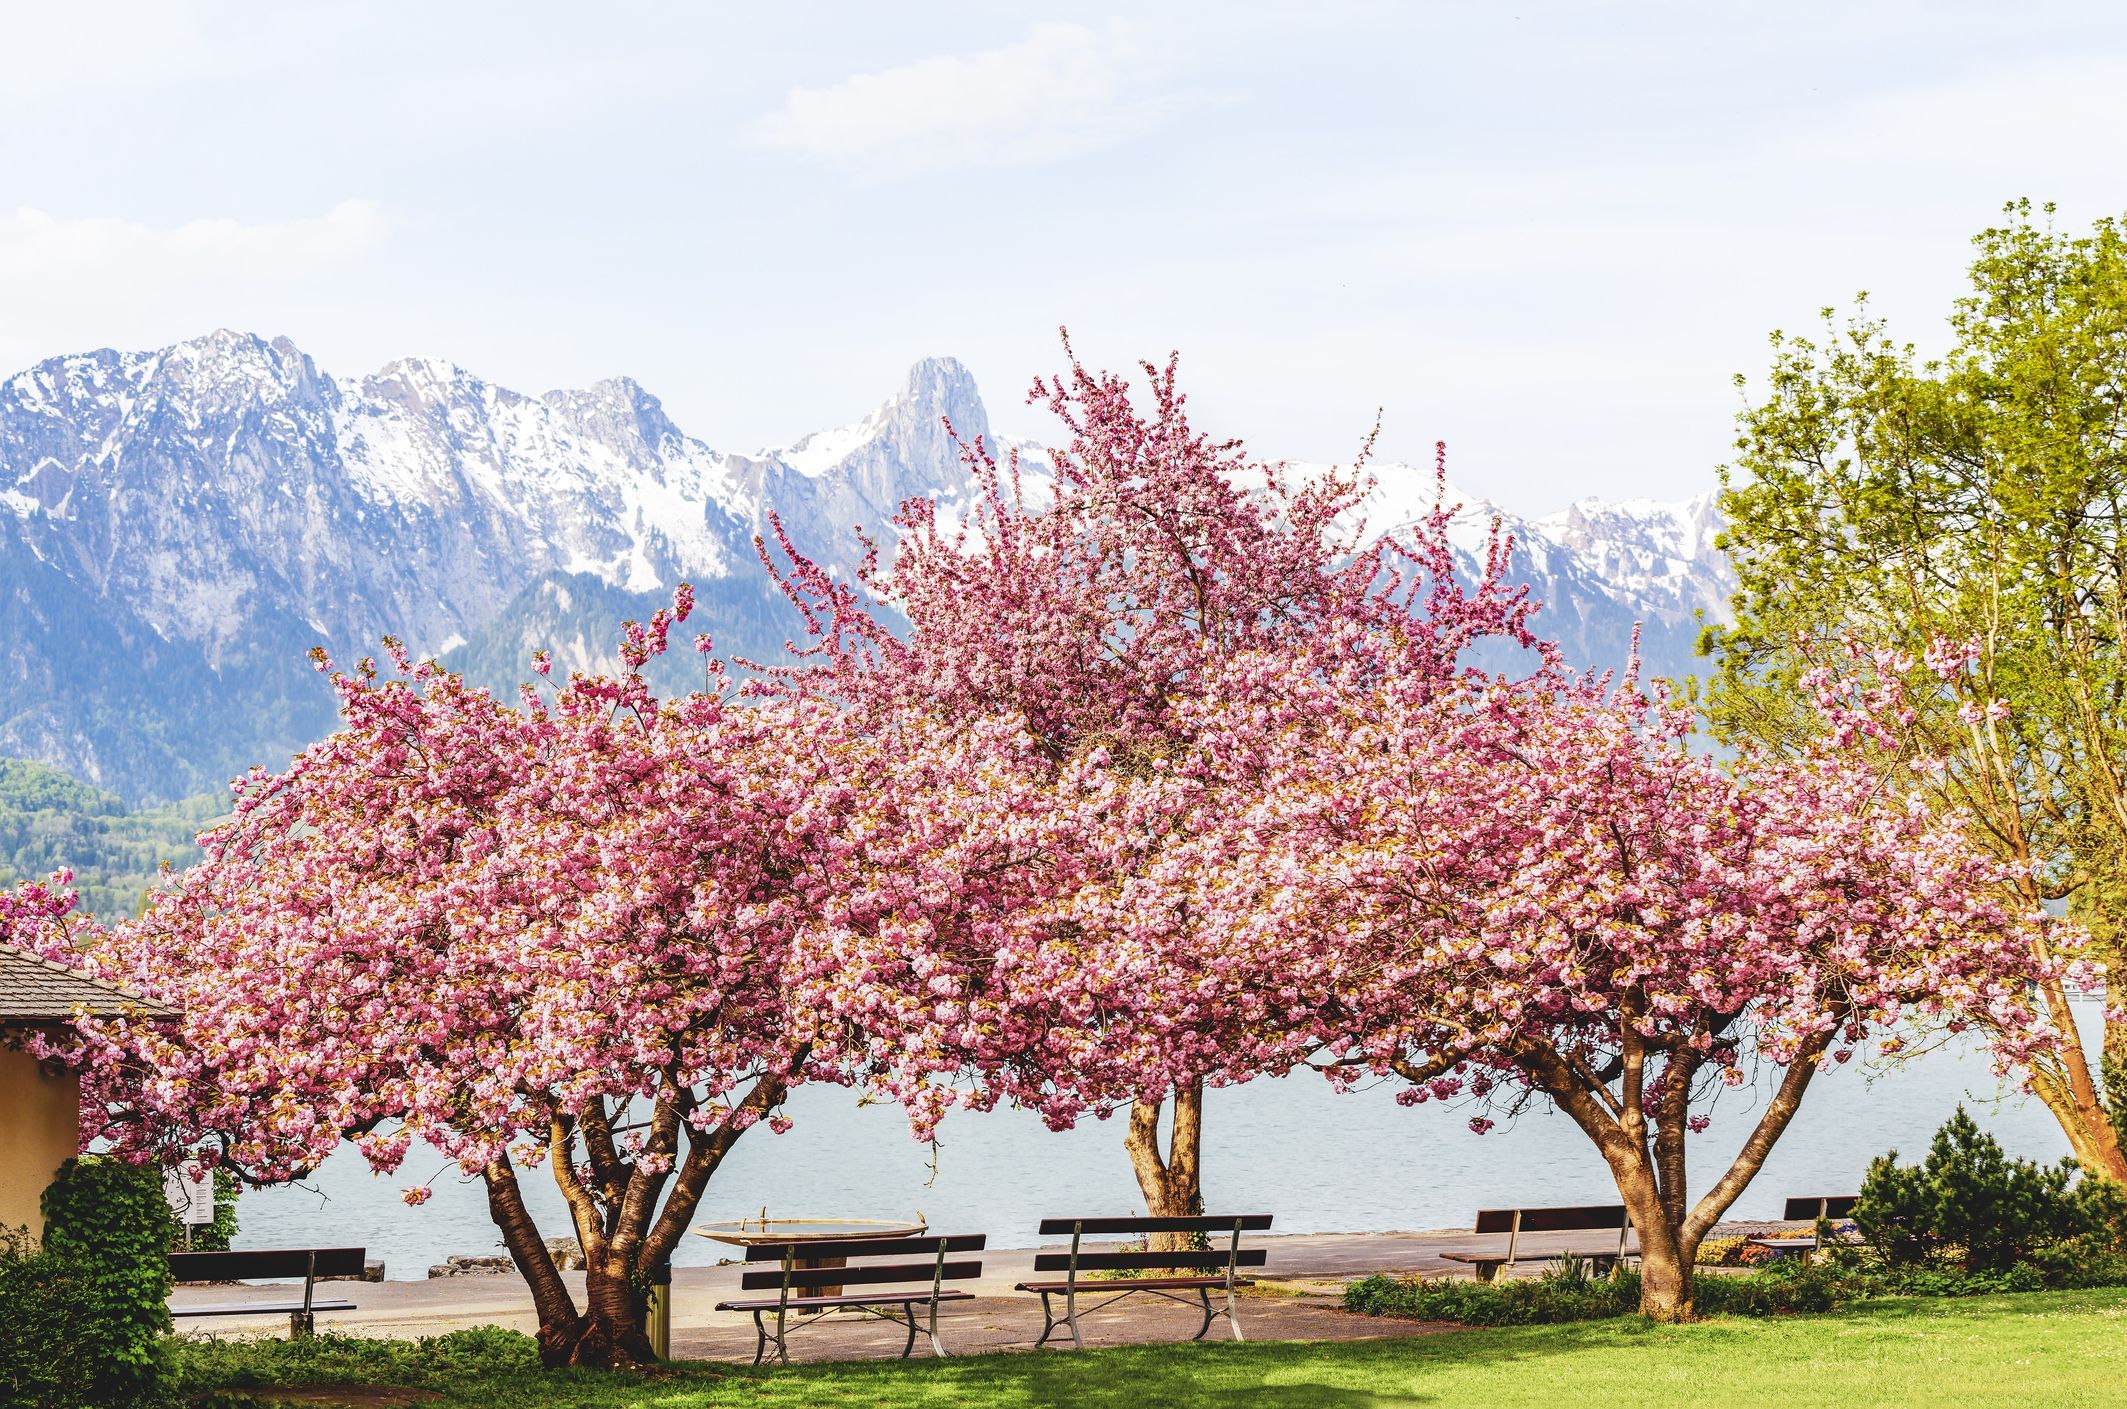 Cvetoče rožnate cvetove japonske češnje ali sakure (Prunus serrulata ali Kanzan) s klopjo ob jezeru in gori